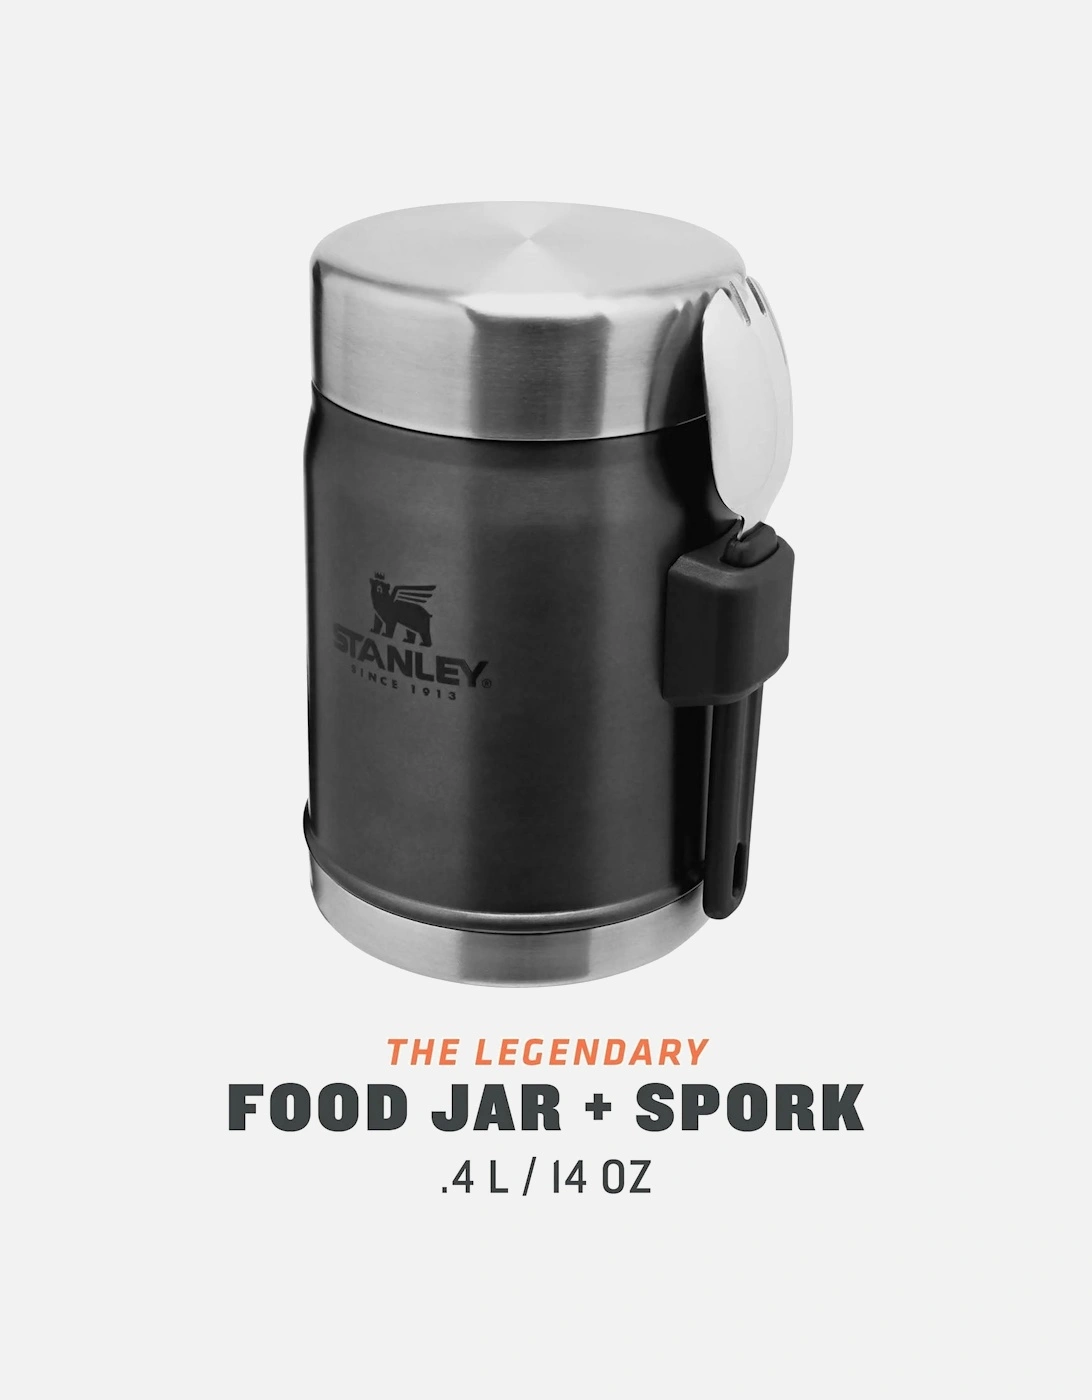 Classic Legendary 0.4L Thermal Food Jar + Spork